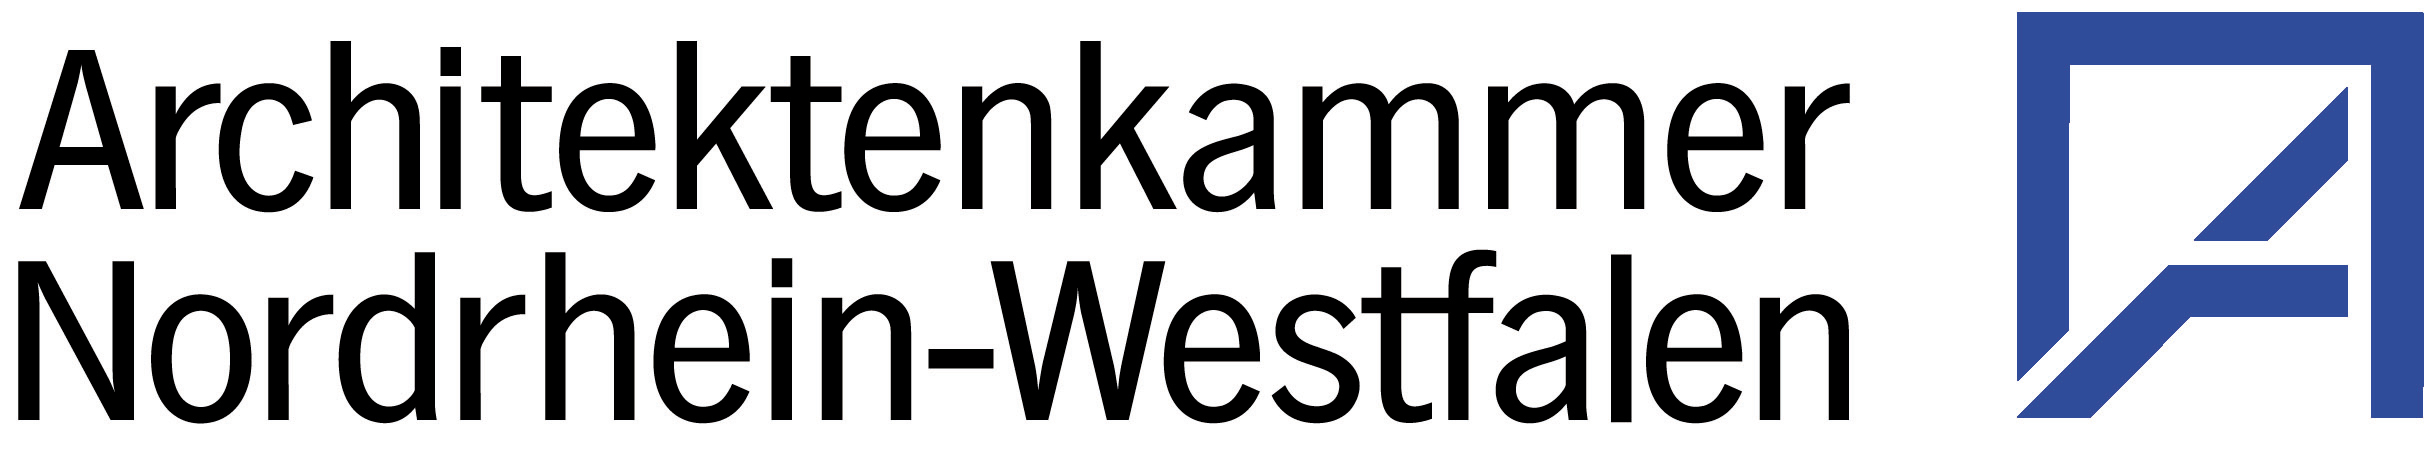 ArchitektenKammer Nordrhein-Westfalen